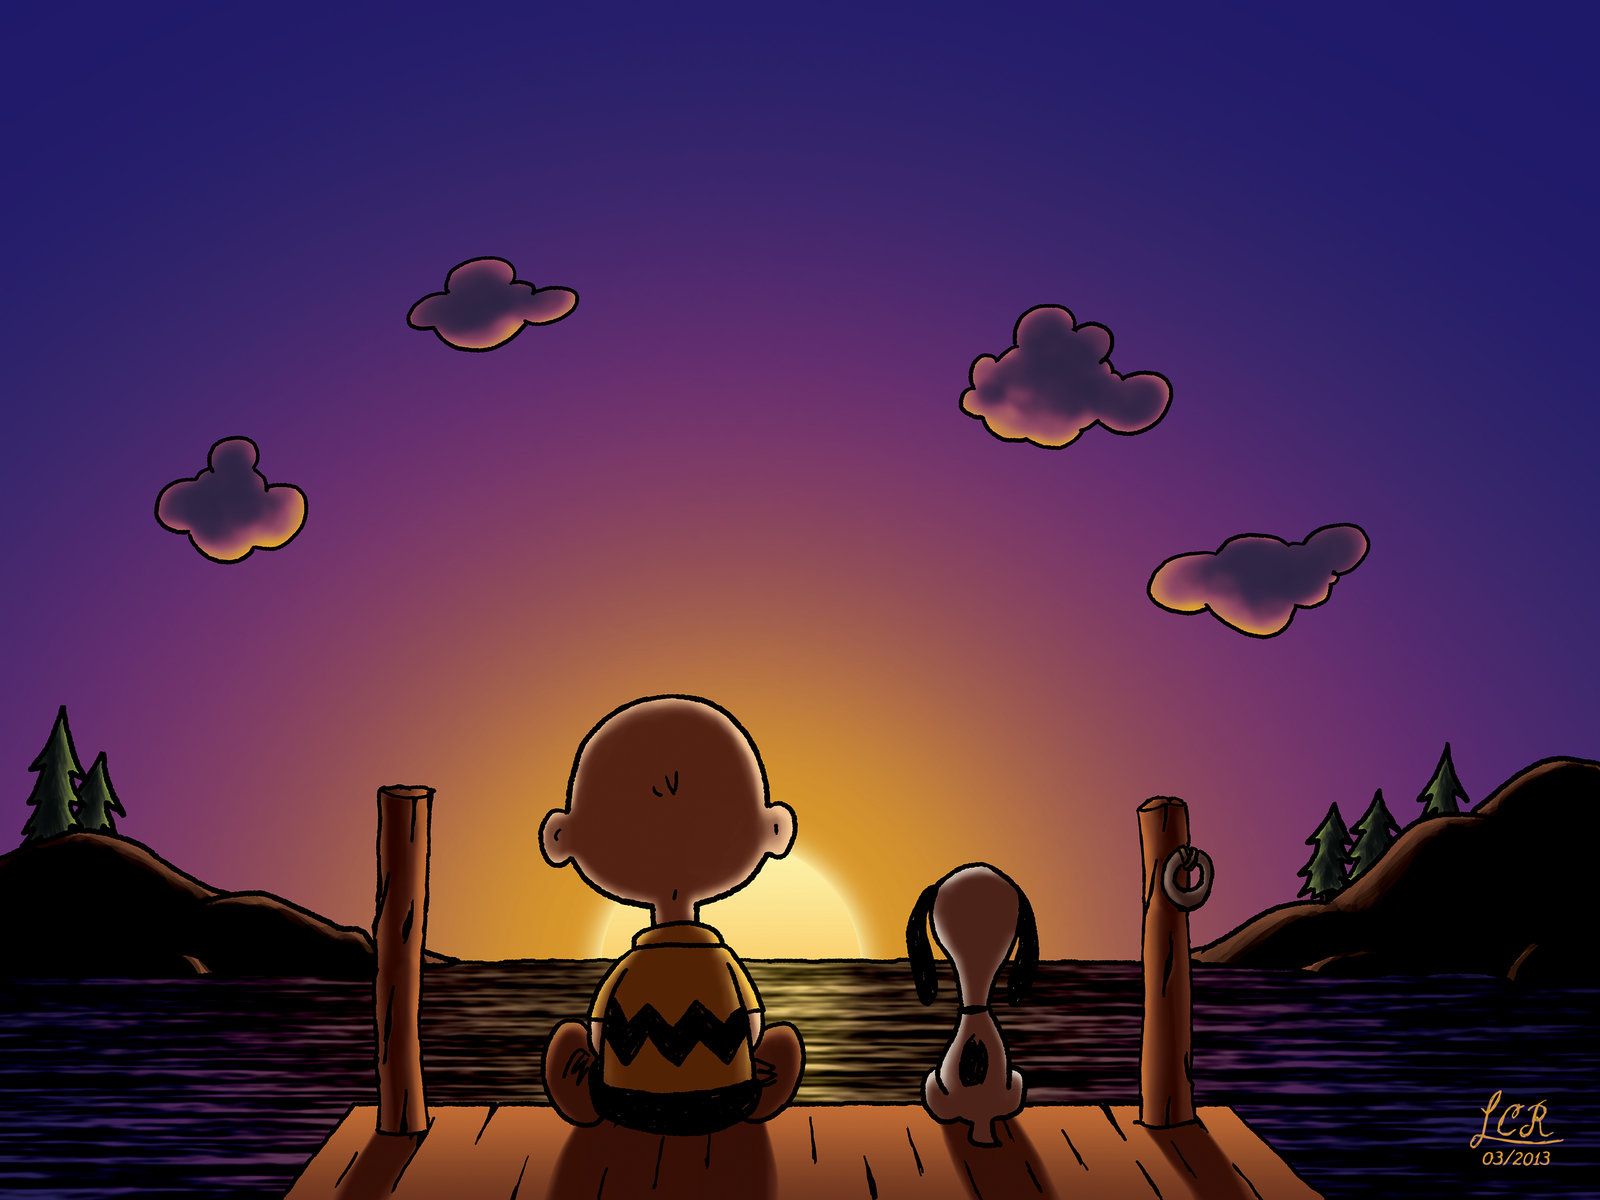 Charlie Brown Redux by leonardocharra on DeviantArt